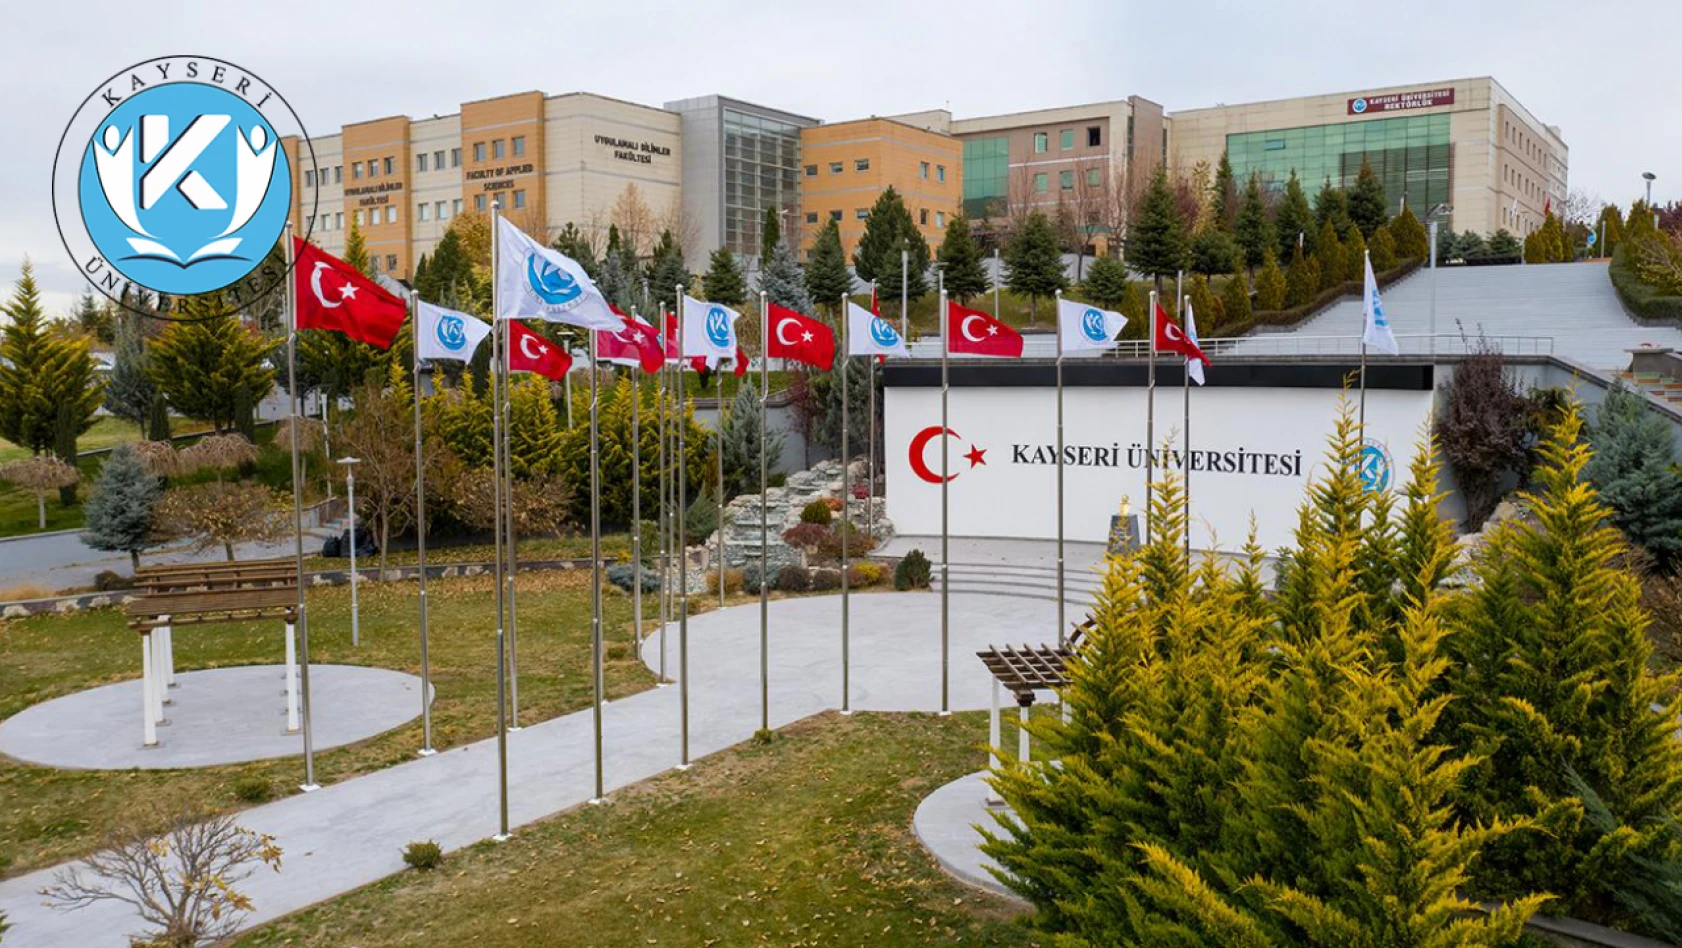 Kayseri Üniversitesi'ne çok sayıda personel alınacak - Lise, ön lisans, lisans…